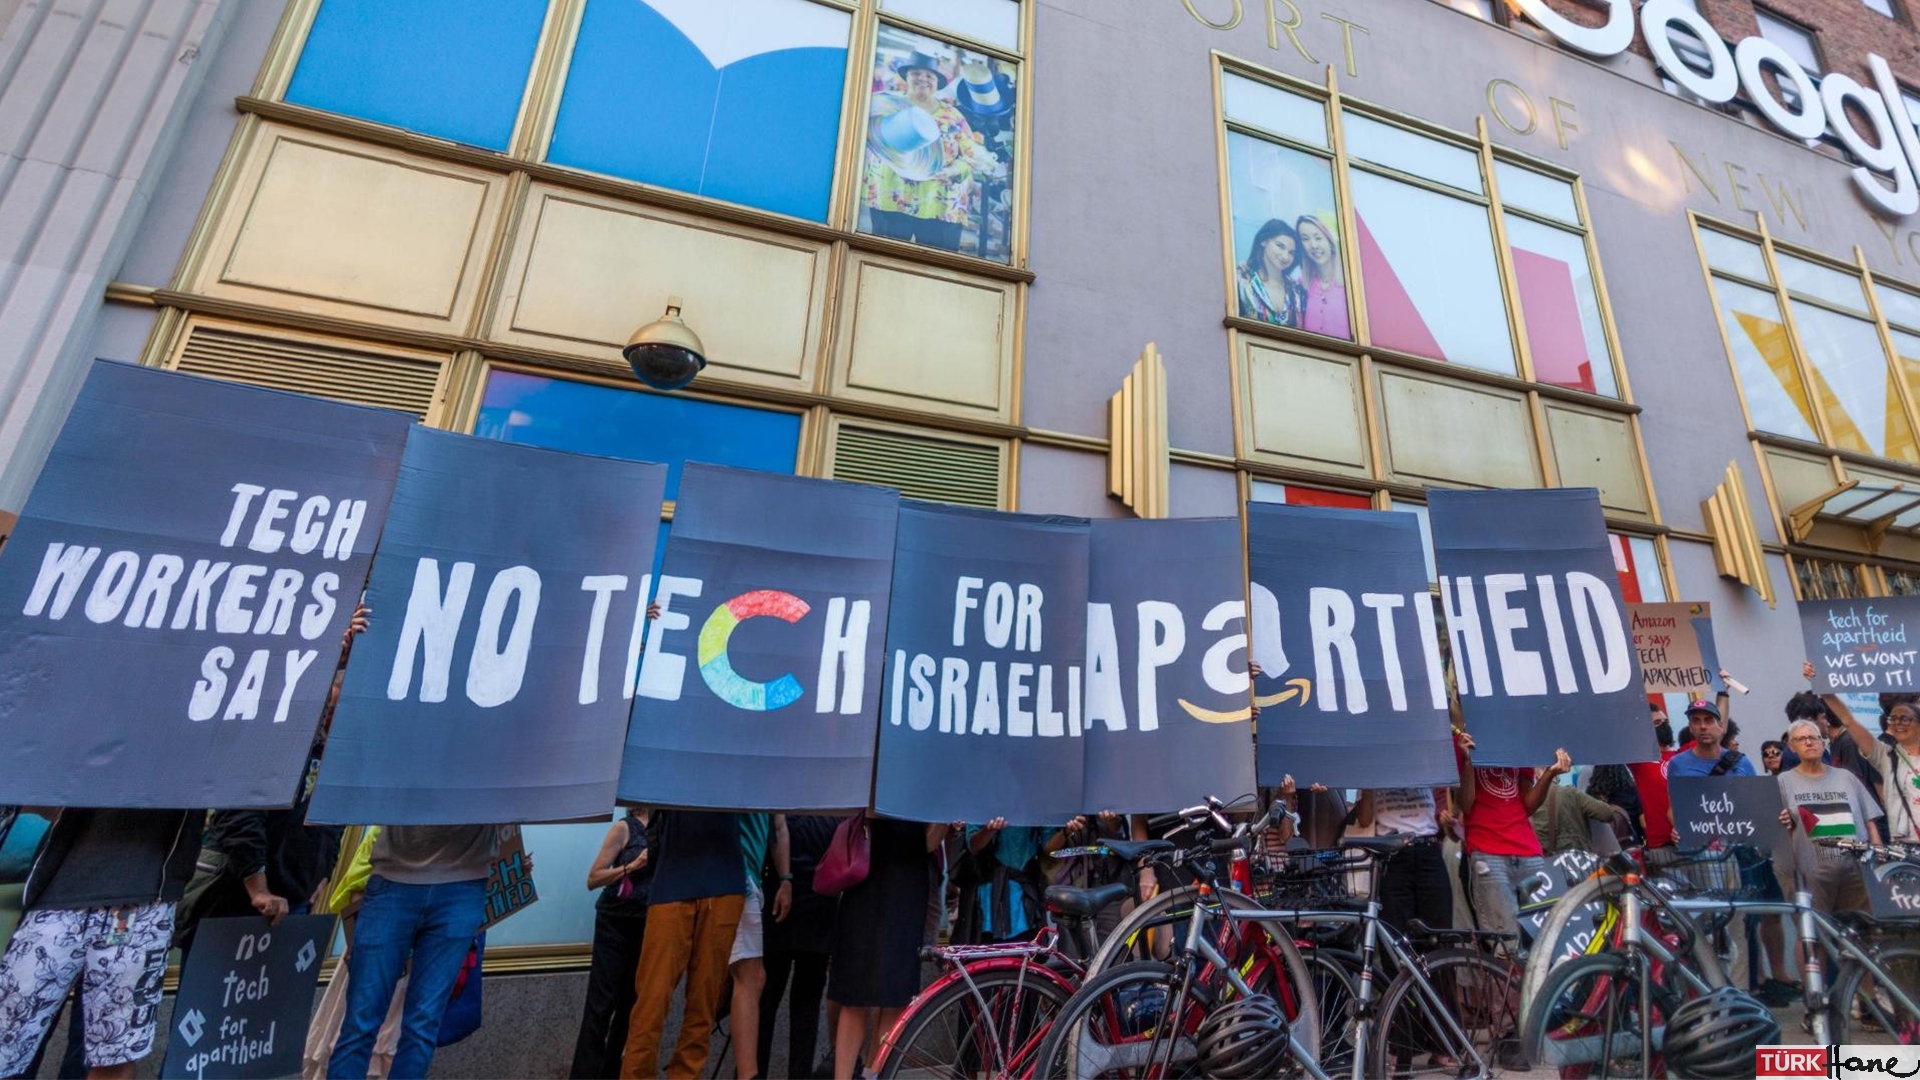 İsrail’le iş yapmayı protesto eden dokuz Google çalışanına gözaltı